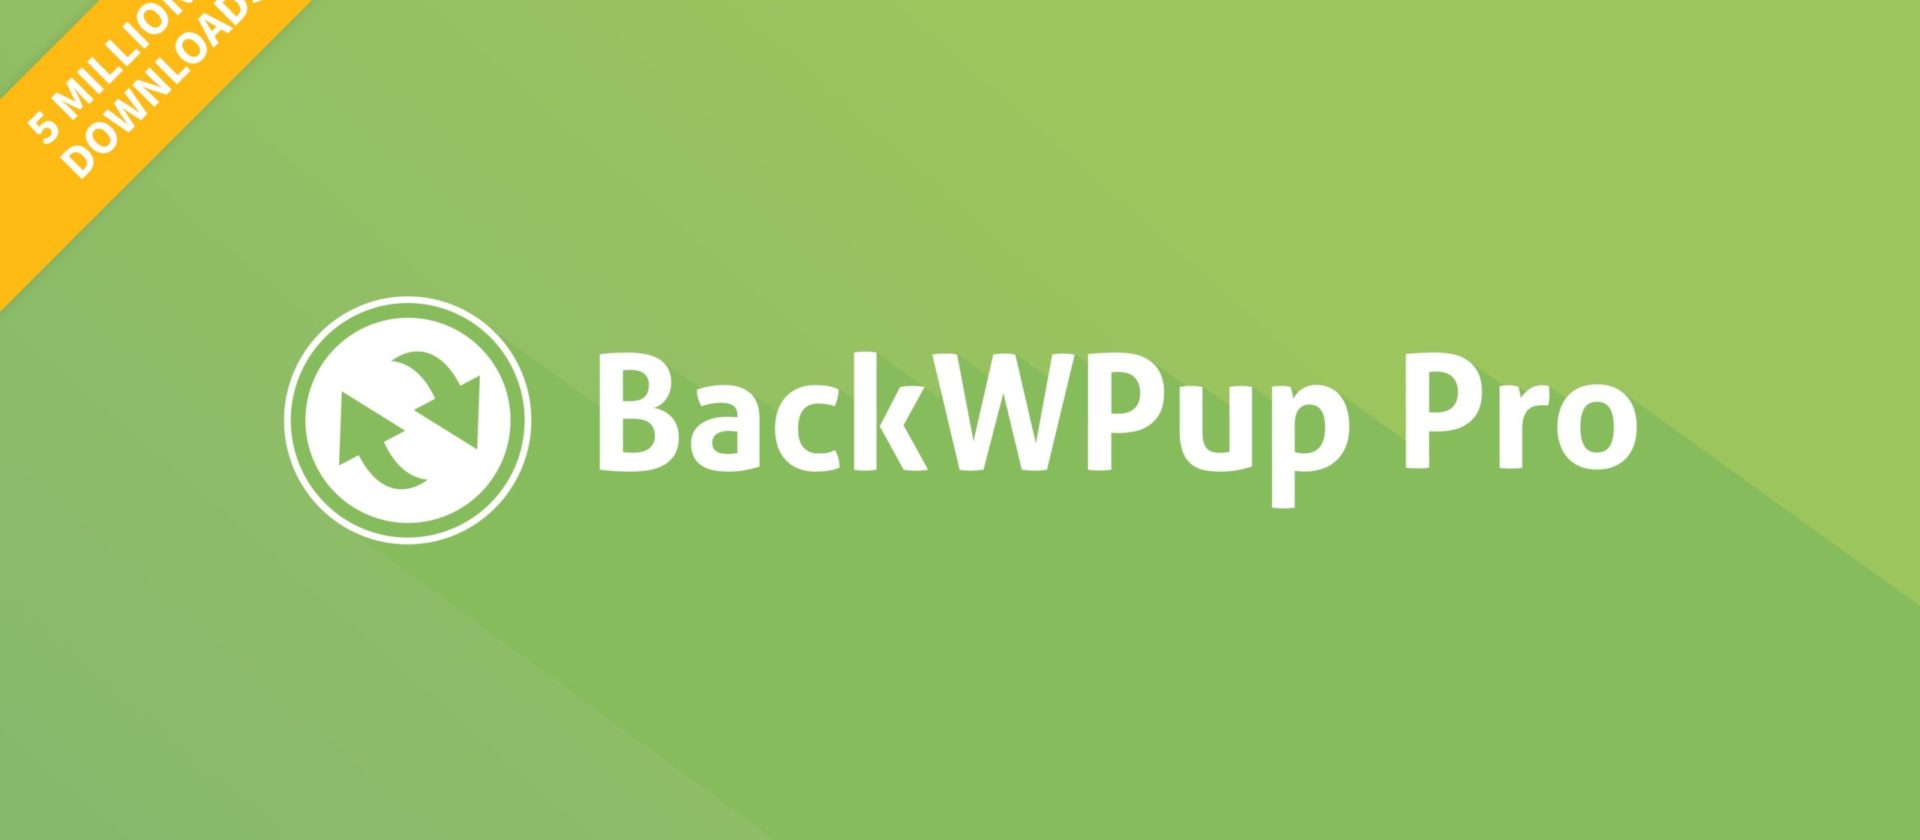 BackWPup 5 Millionen Downloads. Es gibt 50 % Rabatt auf das WordPress Backup Plugin.